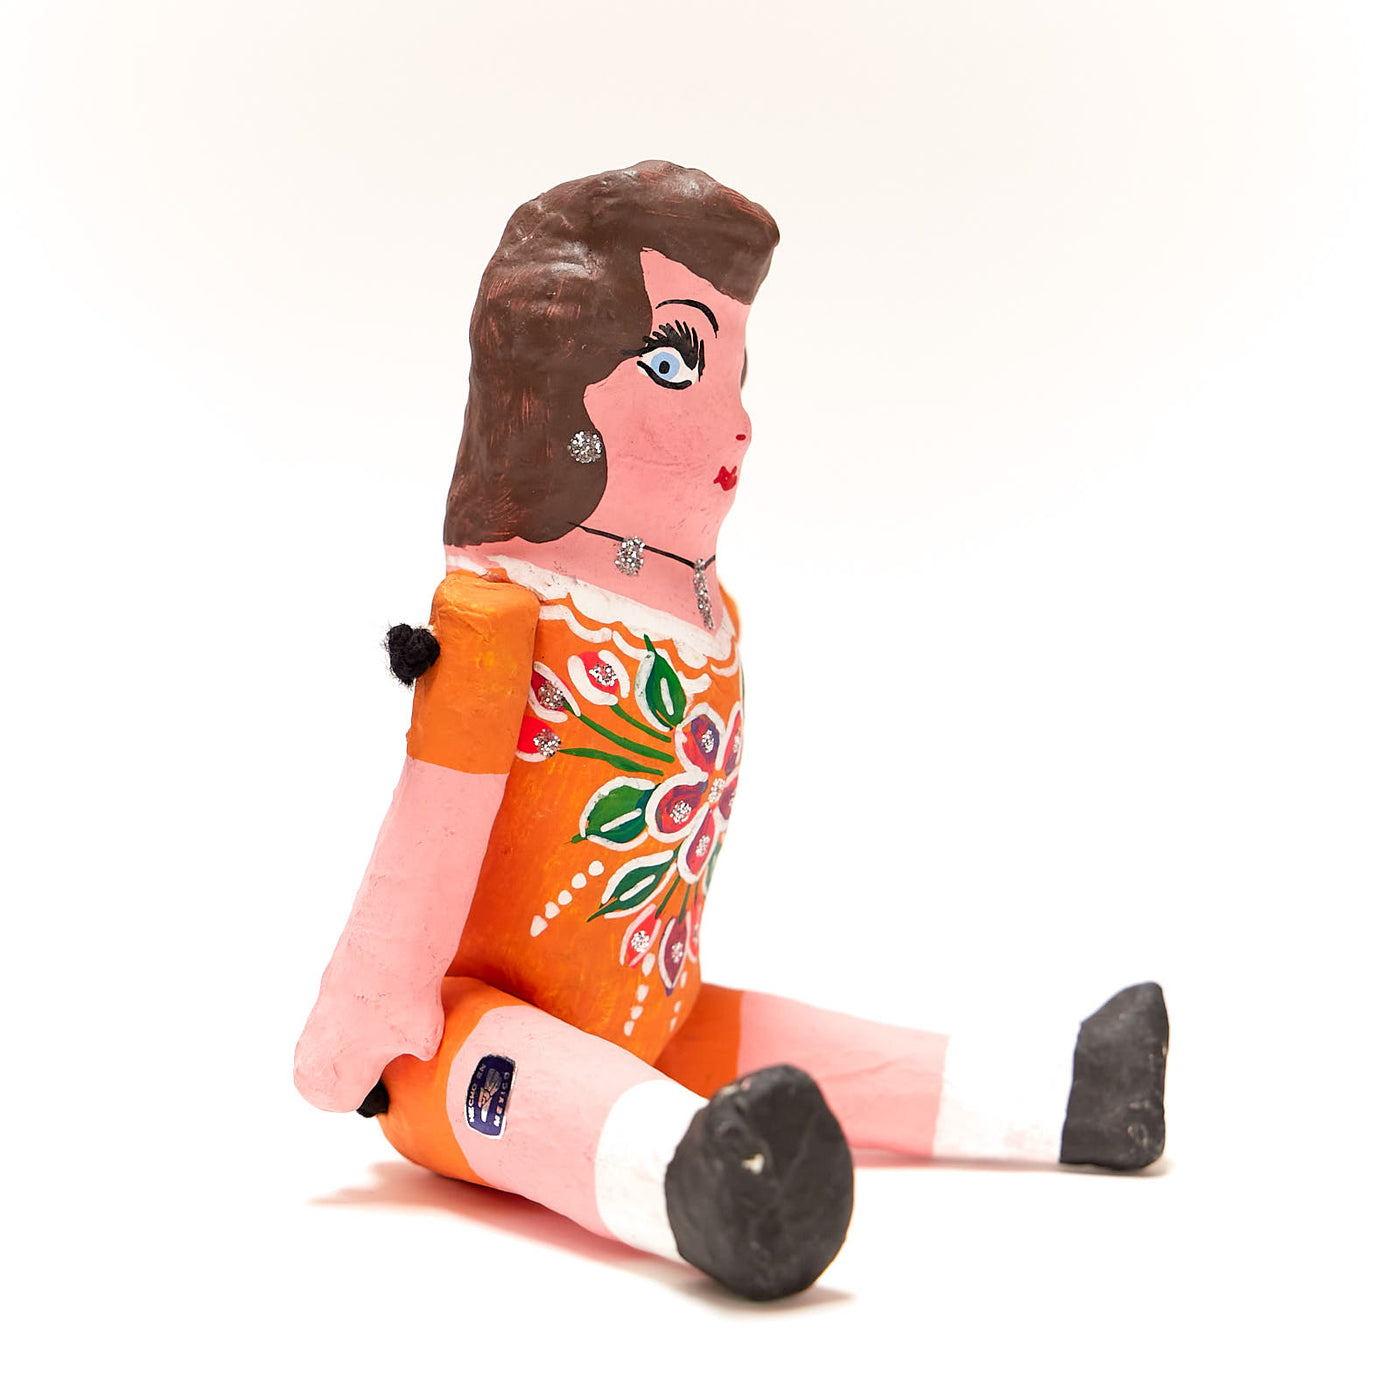 Side view of paper muñeca doll. Doll is wearing a light orange dress.